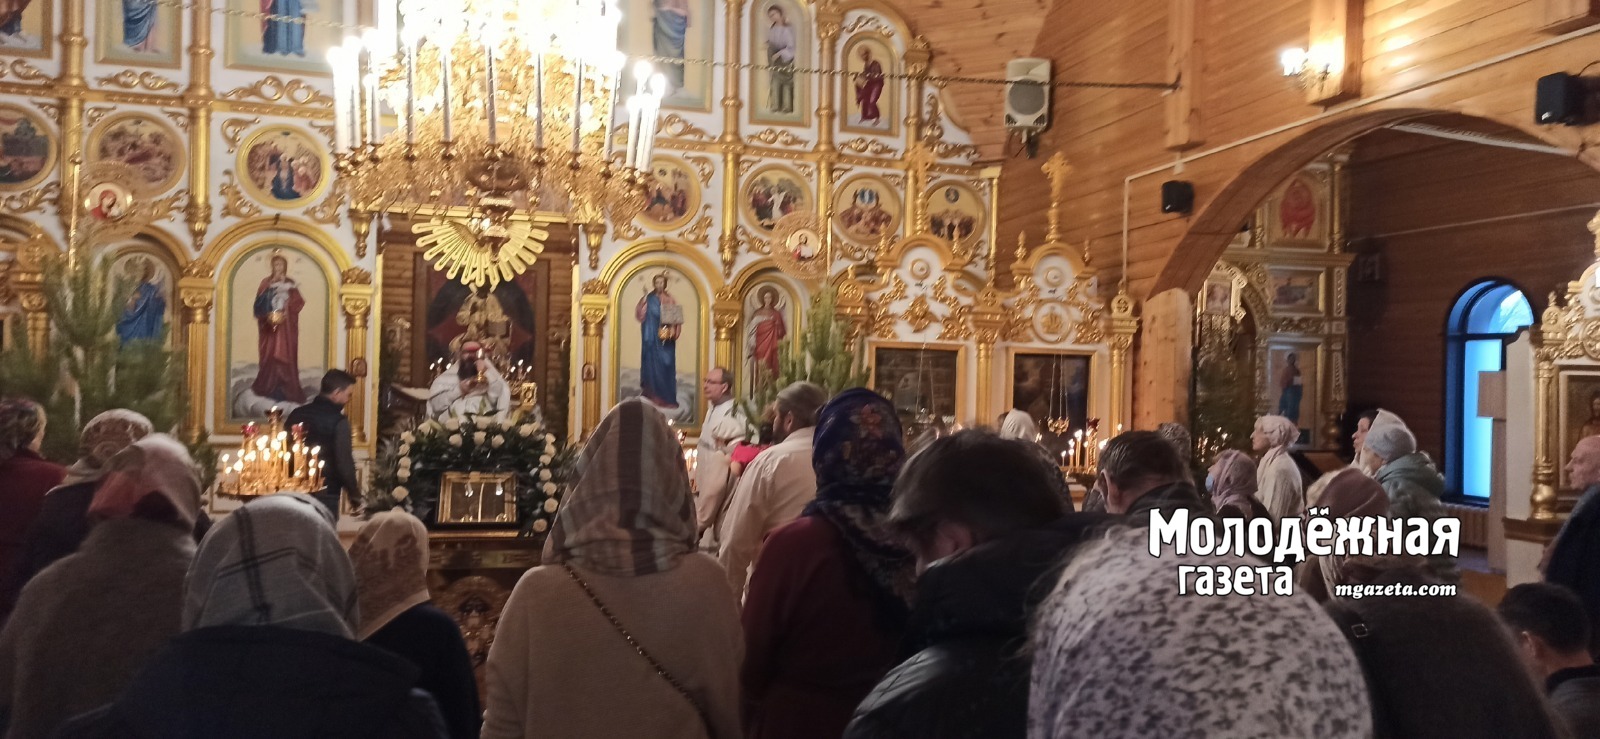 Члены Общественной палаты Башкирии высказались об инициативе Русской православной церкви запретить аборты без согласия мужа